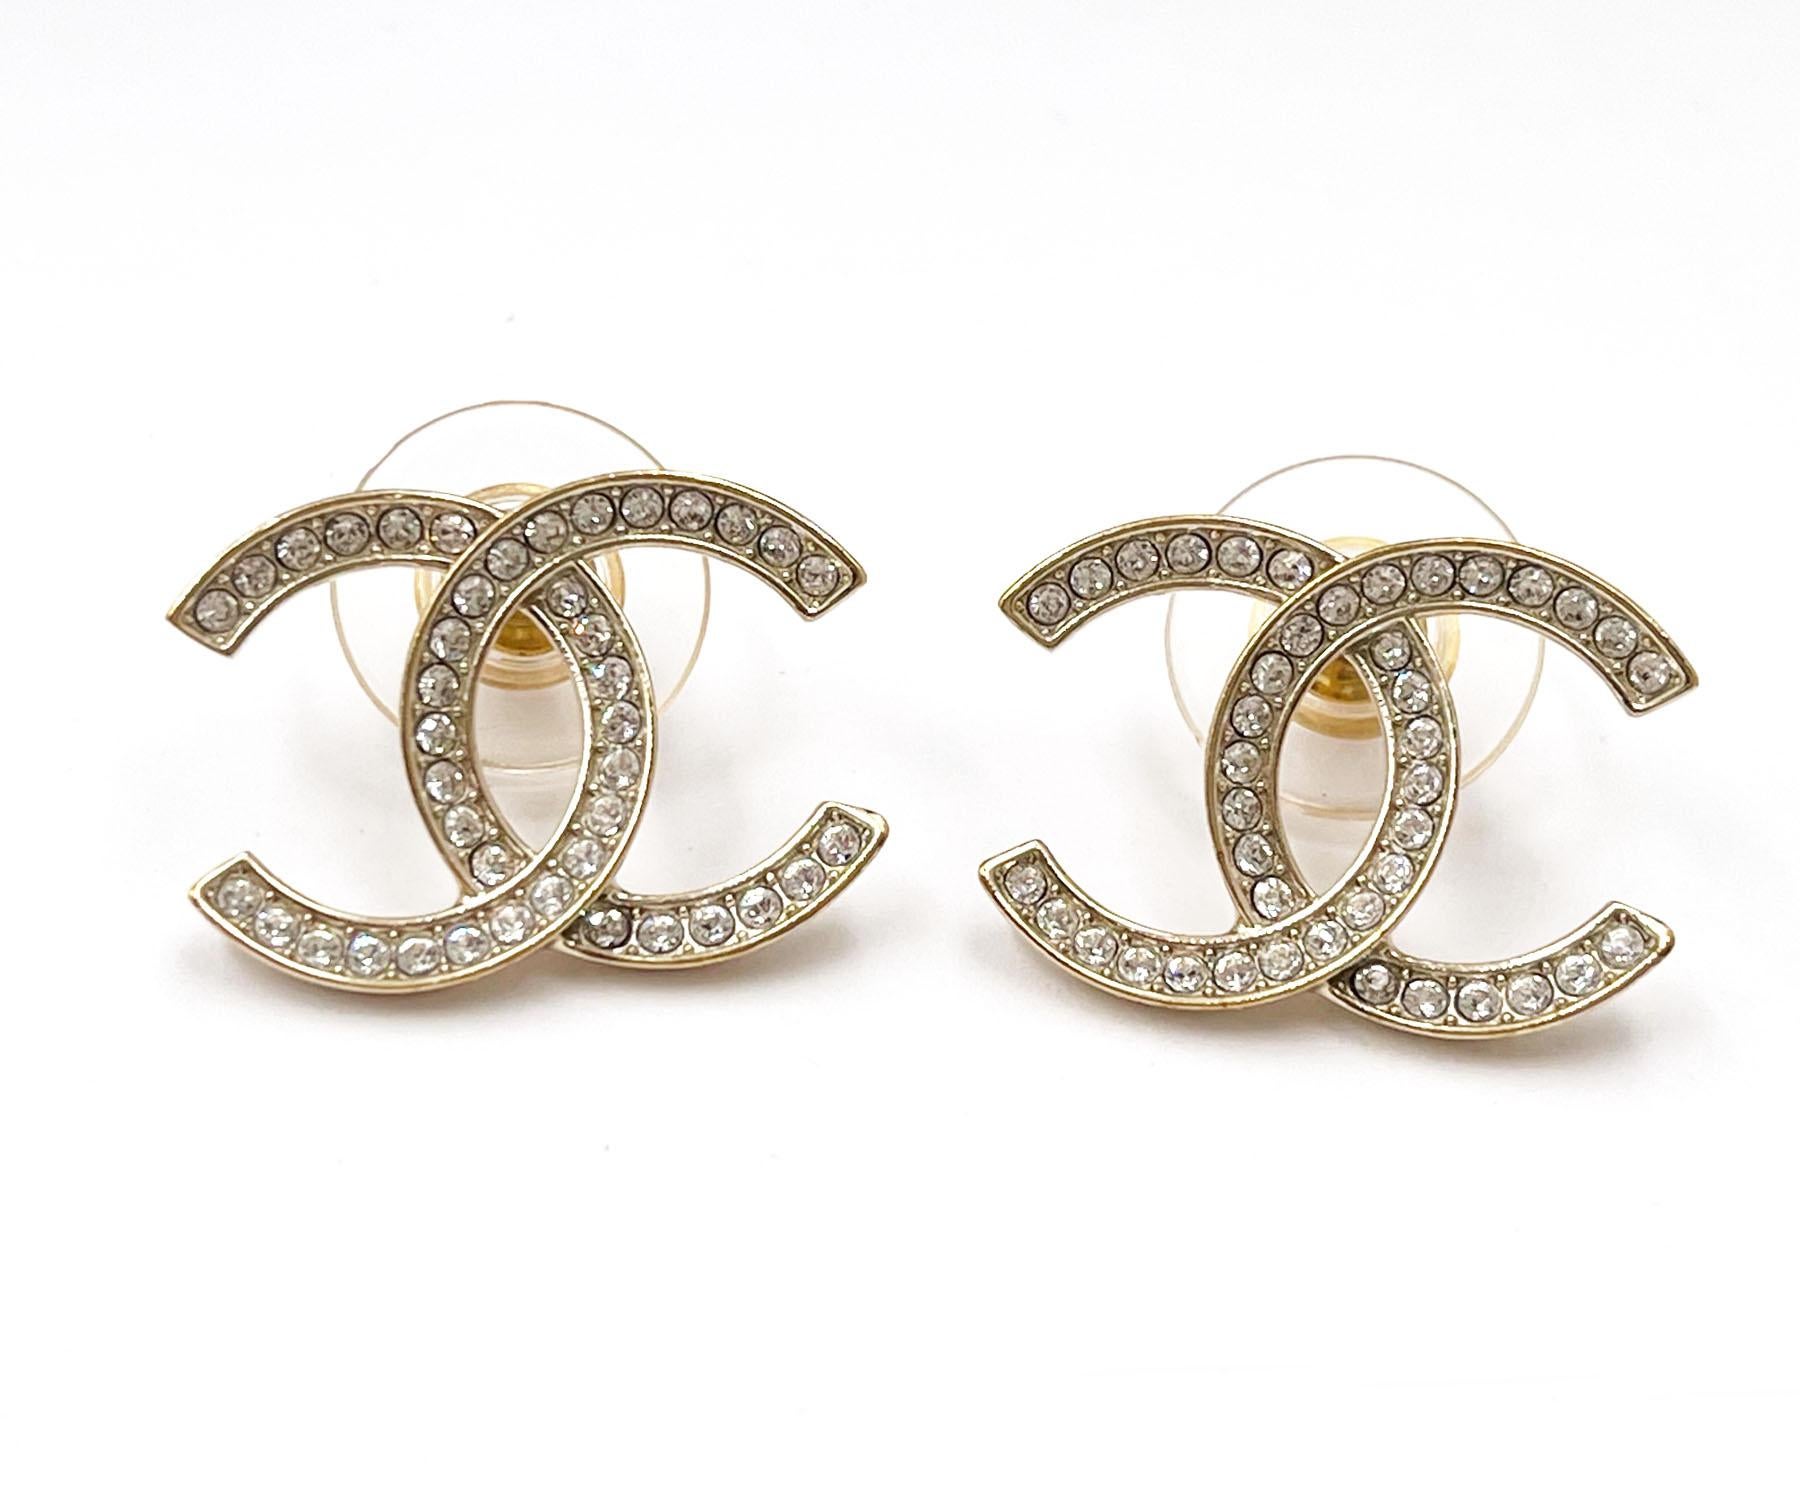 Chanel Klassische Gold CC Dünne Kristall Große Piercing Ohrringe

*Markierung 21
*Hergestellt in Italien
*Wird mit der Originalverpackung und dem Etui geliefert.

-Er ist ungefähr 0,9